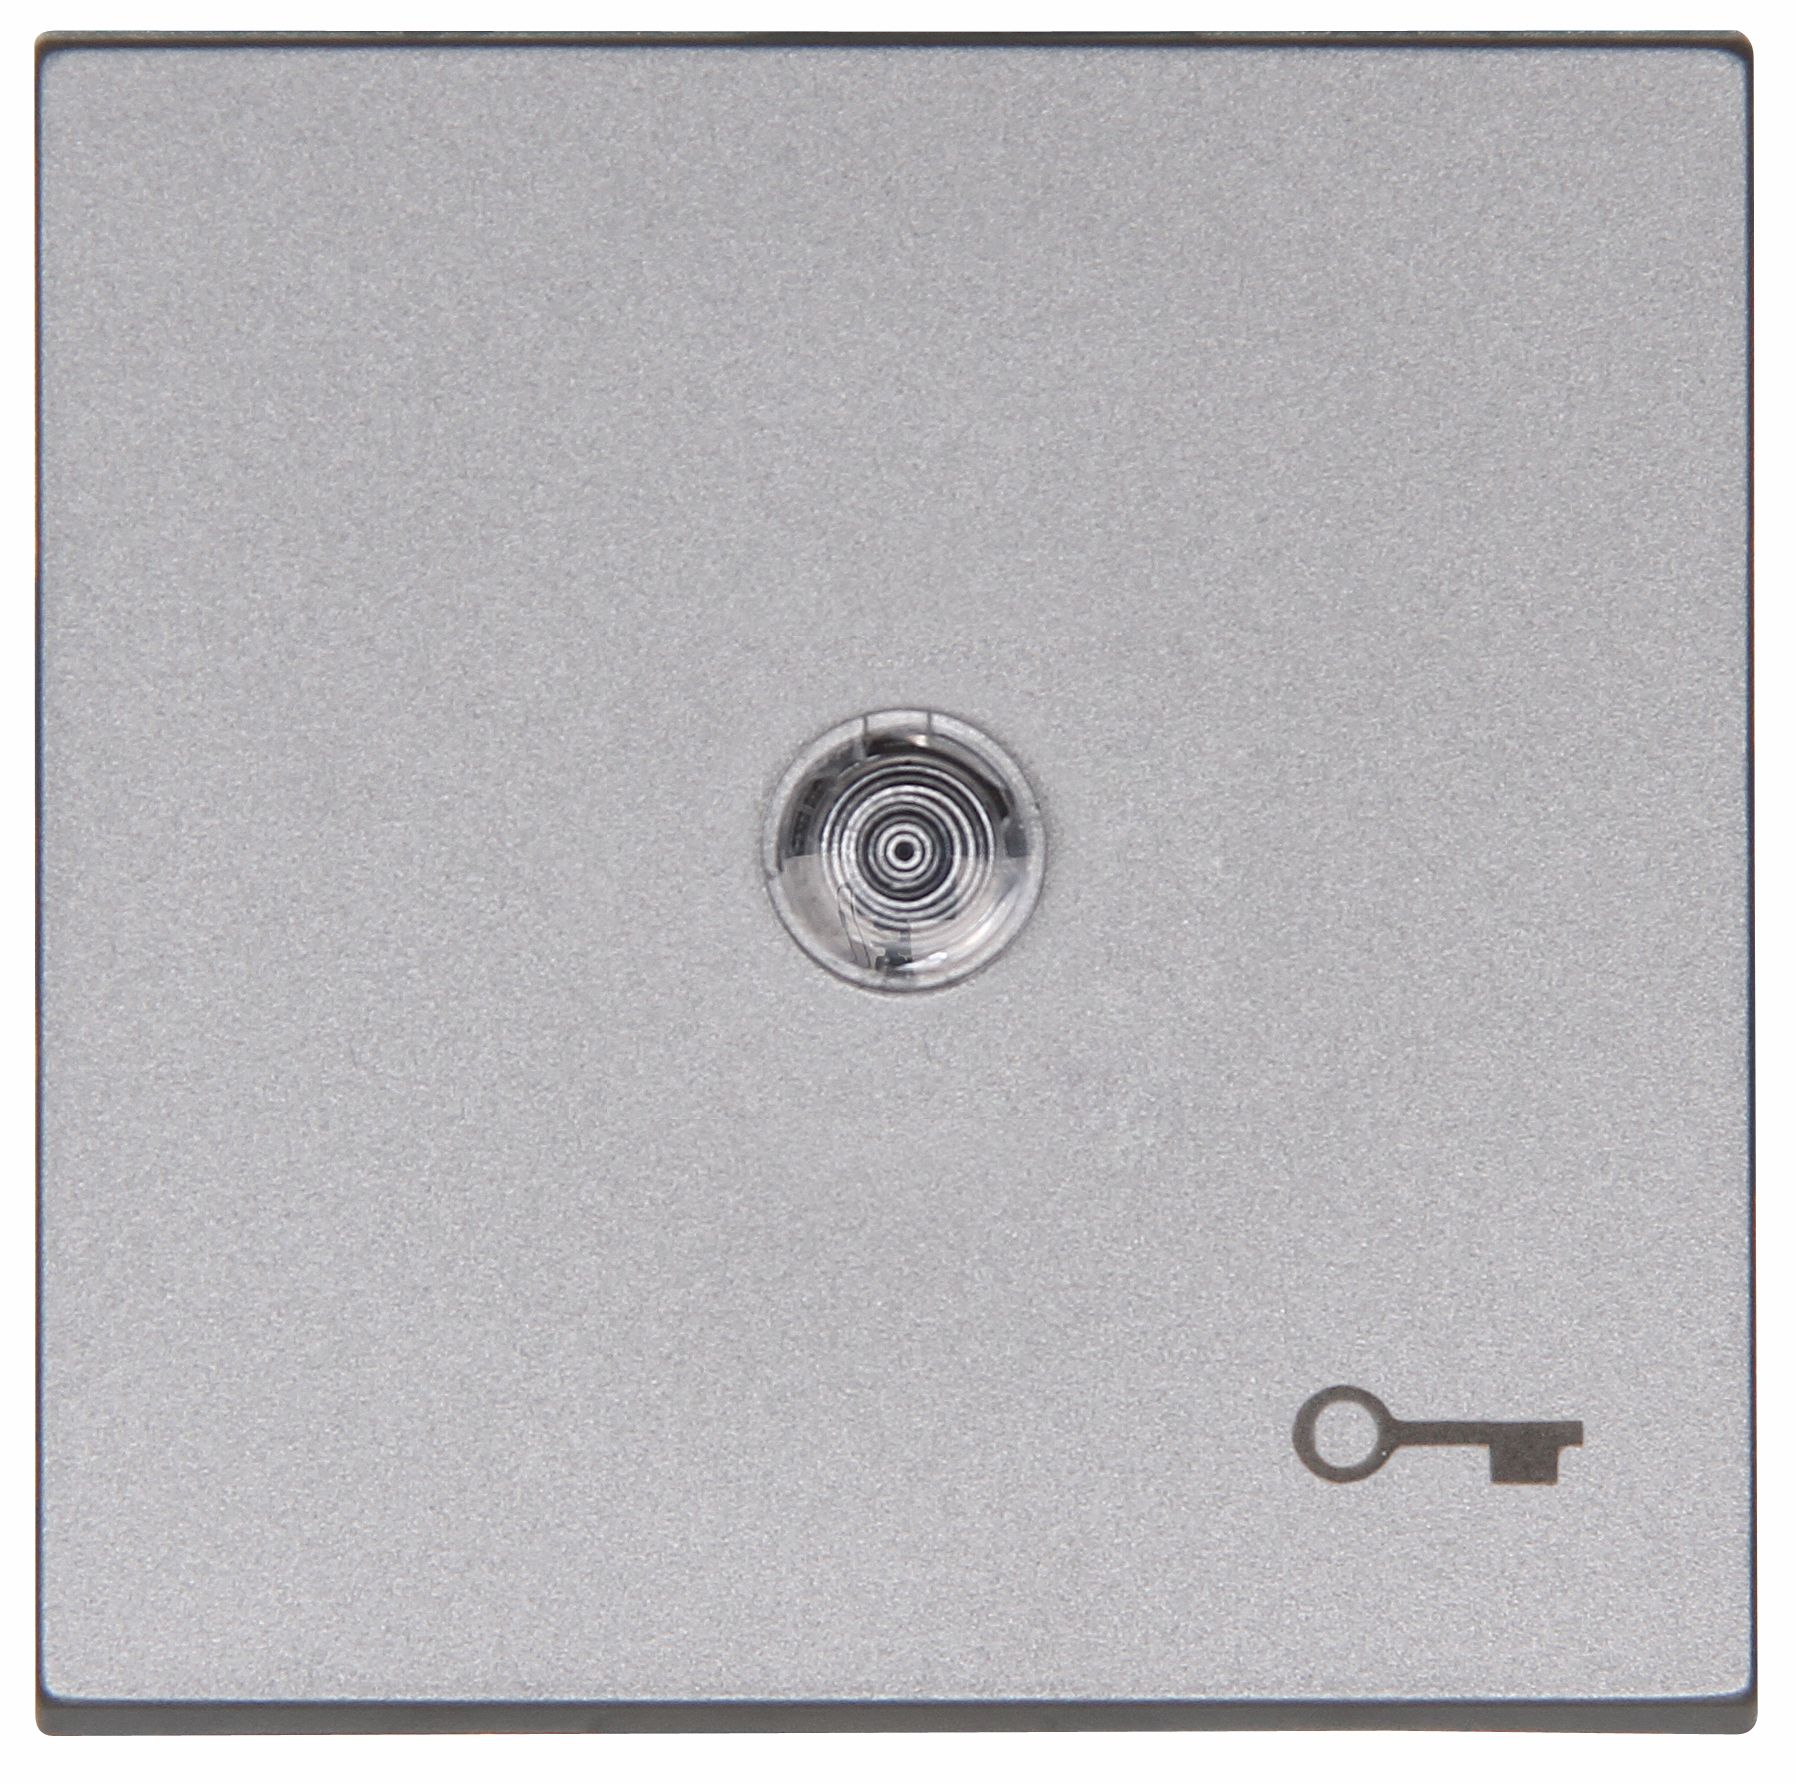 Kopp 490463002 HK07 - Flächenwippe mit Linse und Symbol "Schlüssel", Farbe: stahl